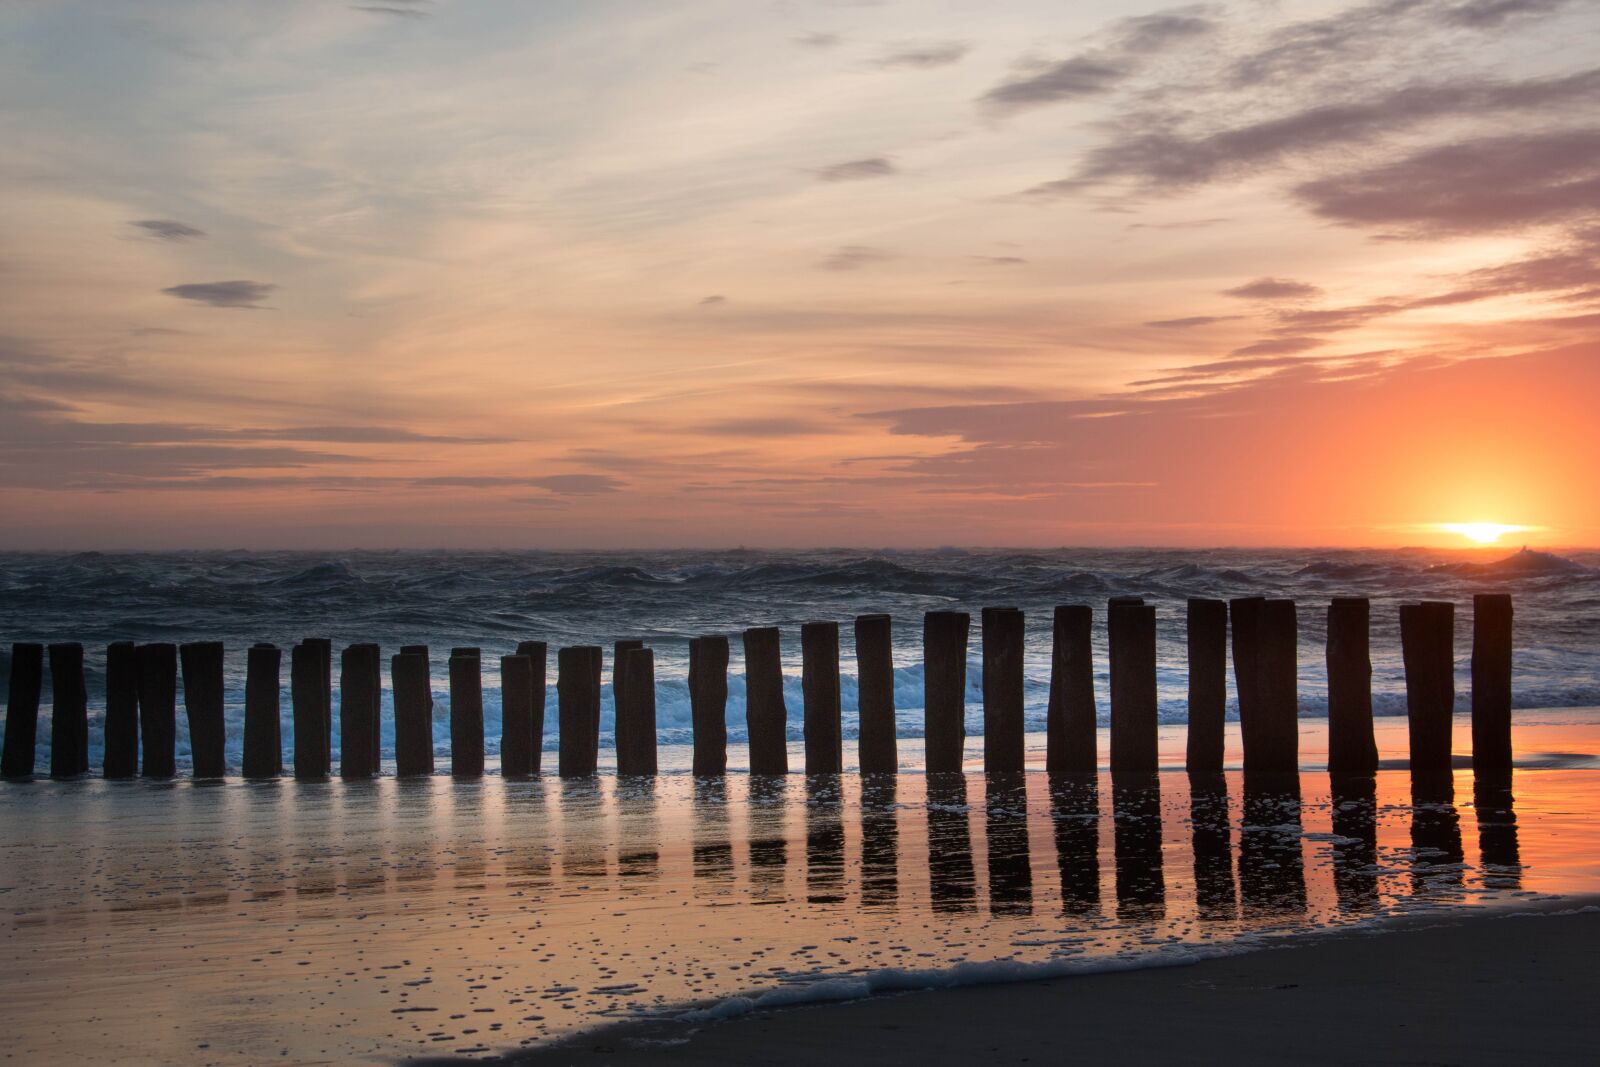 Canon EOS 70D sample photo. Ocean, sunset, sky photography